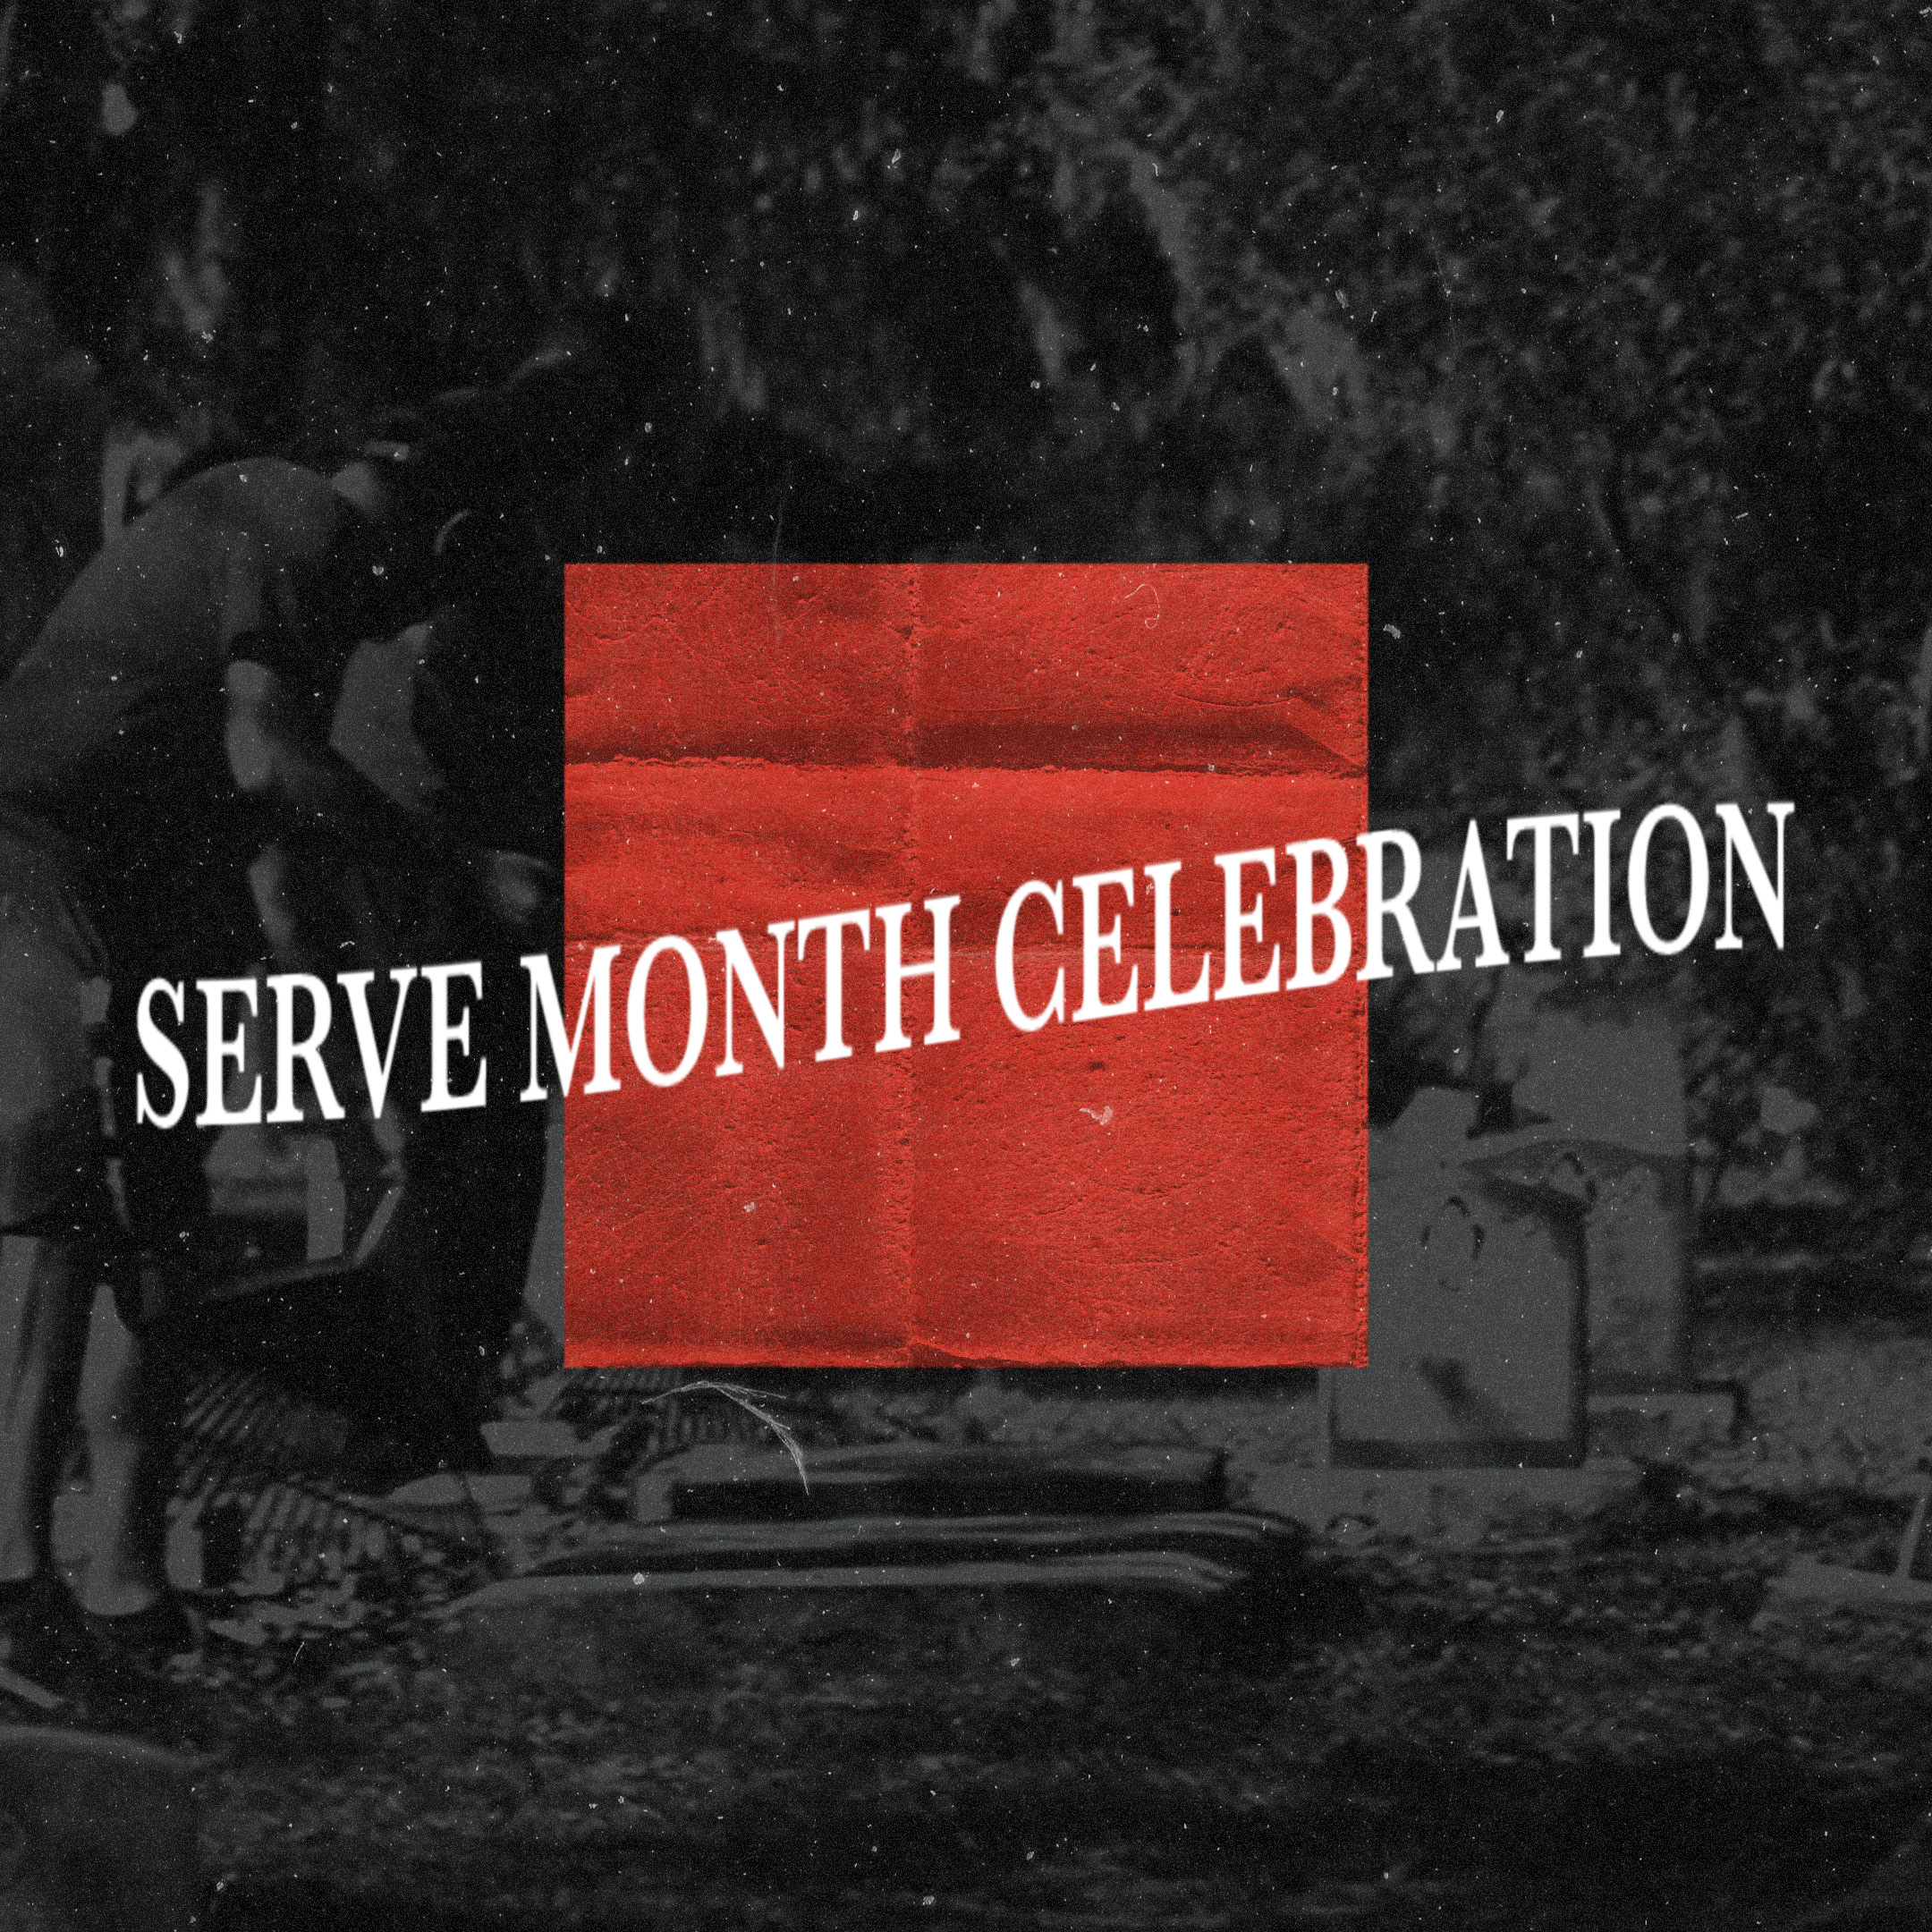 Serve Month Celebration 2020